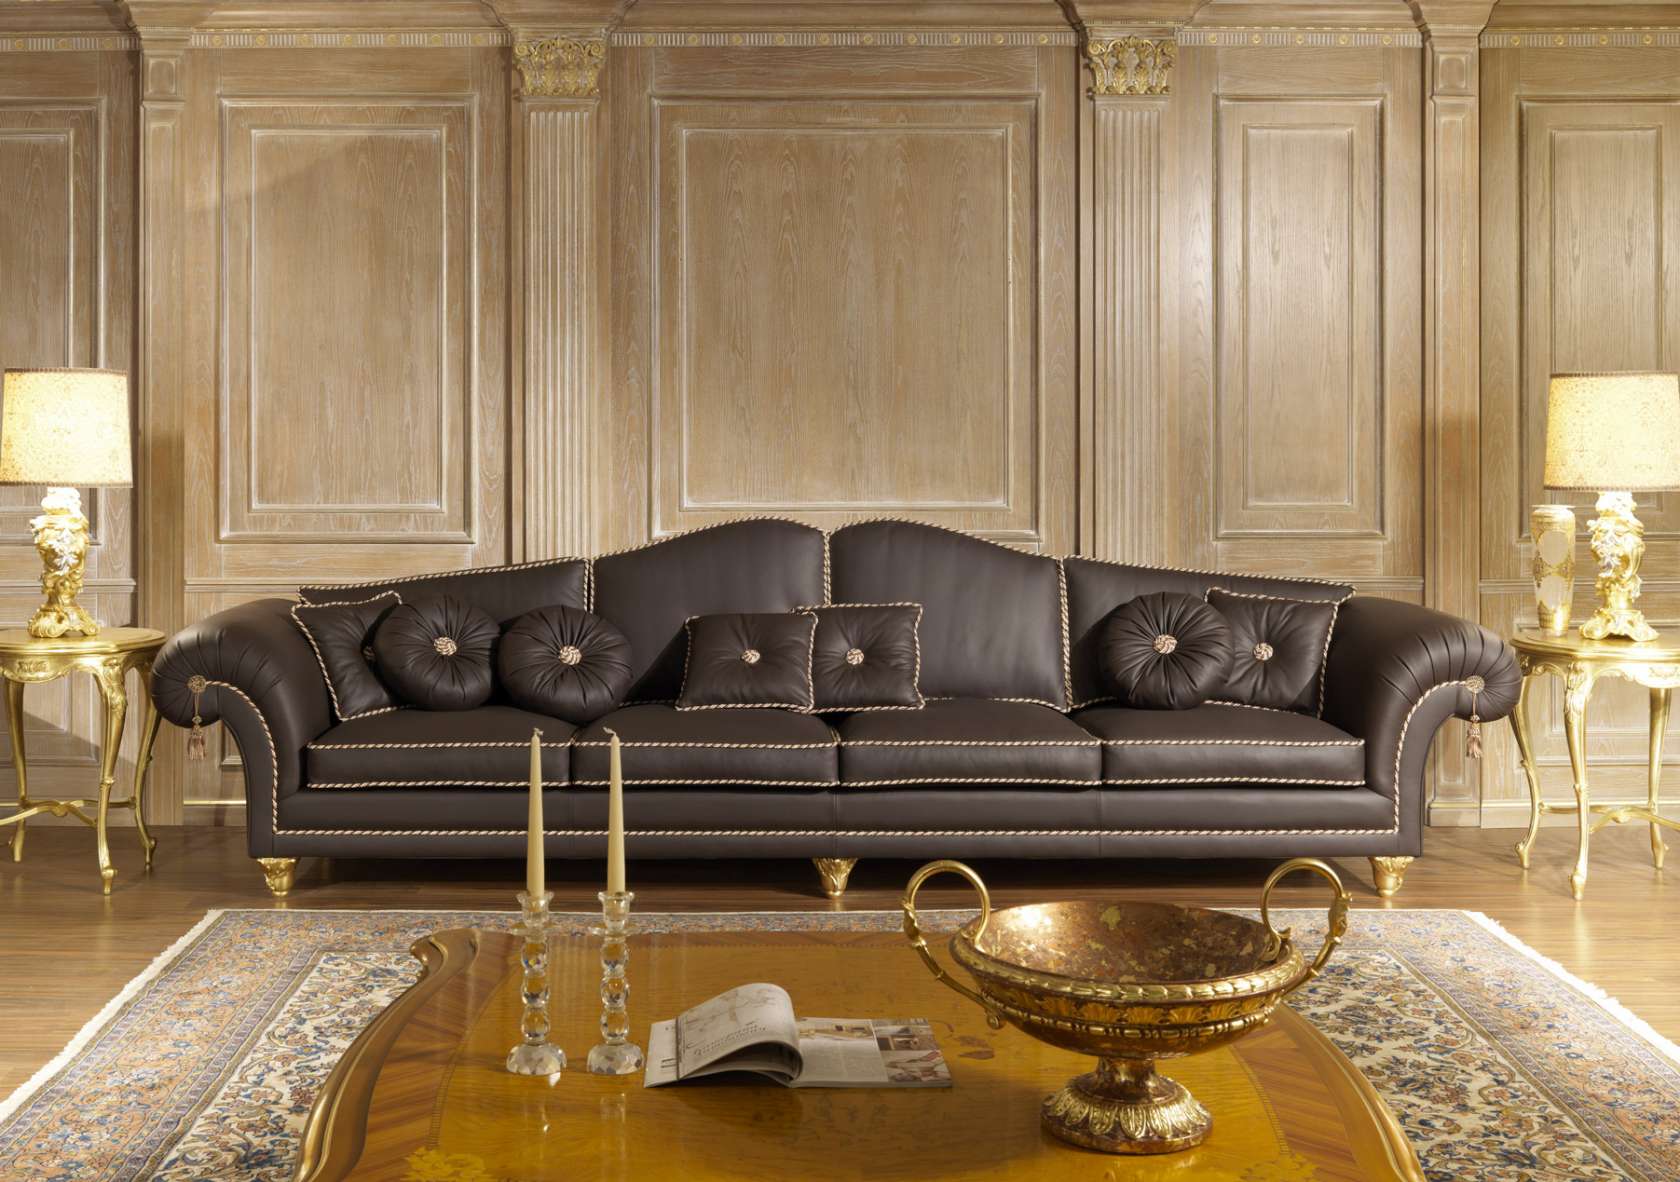 Luxurious Leather Sofas